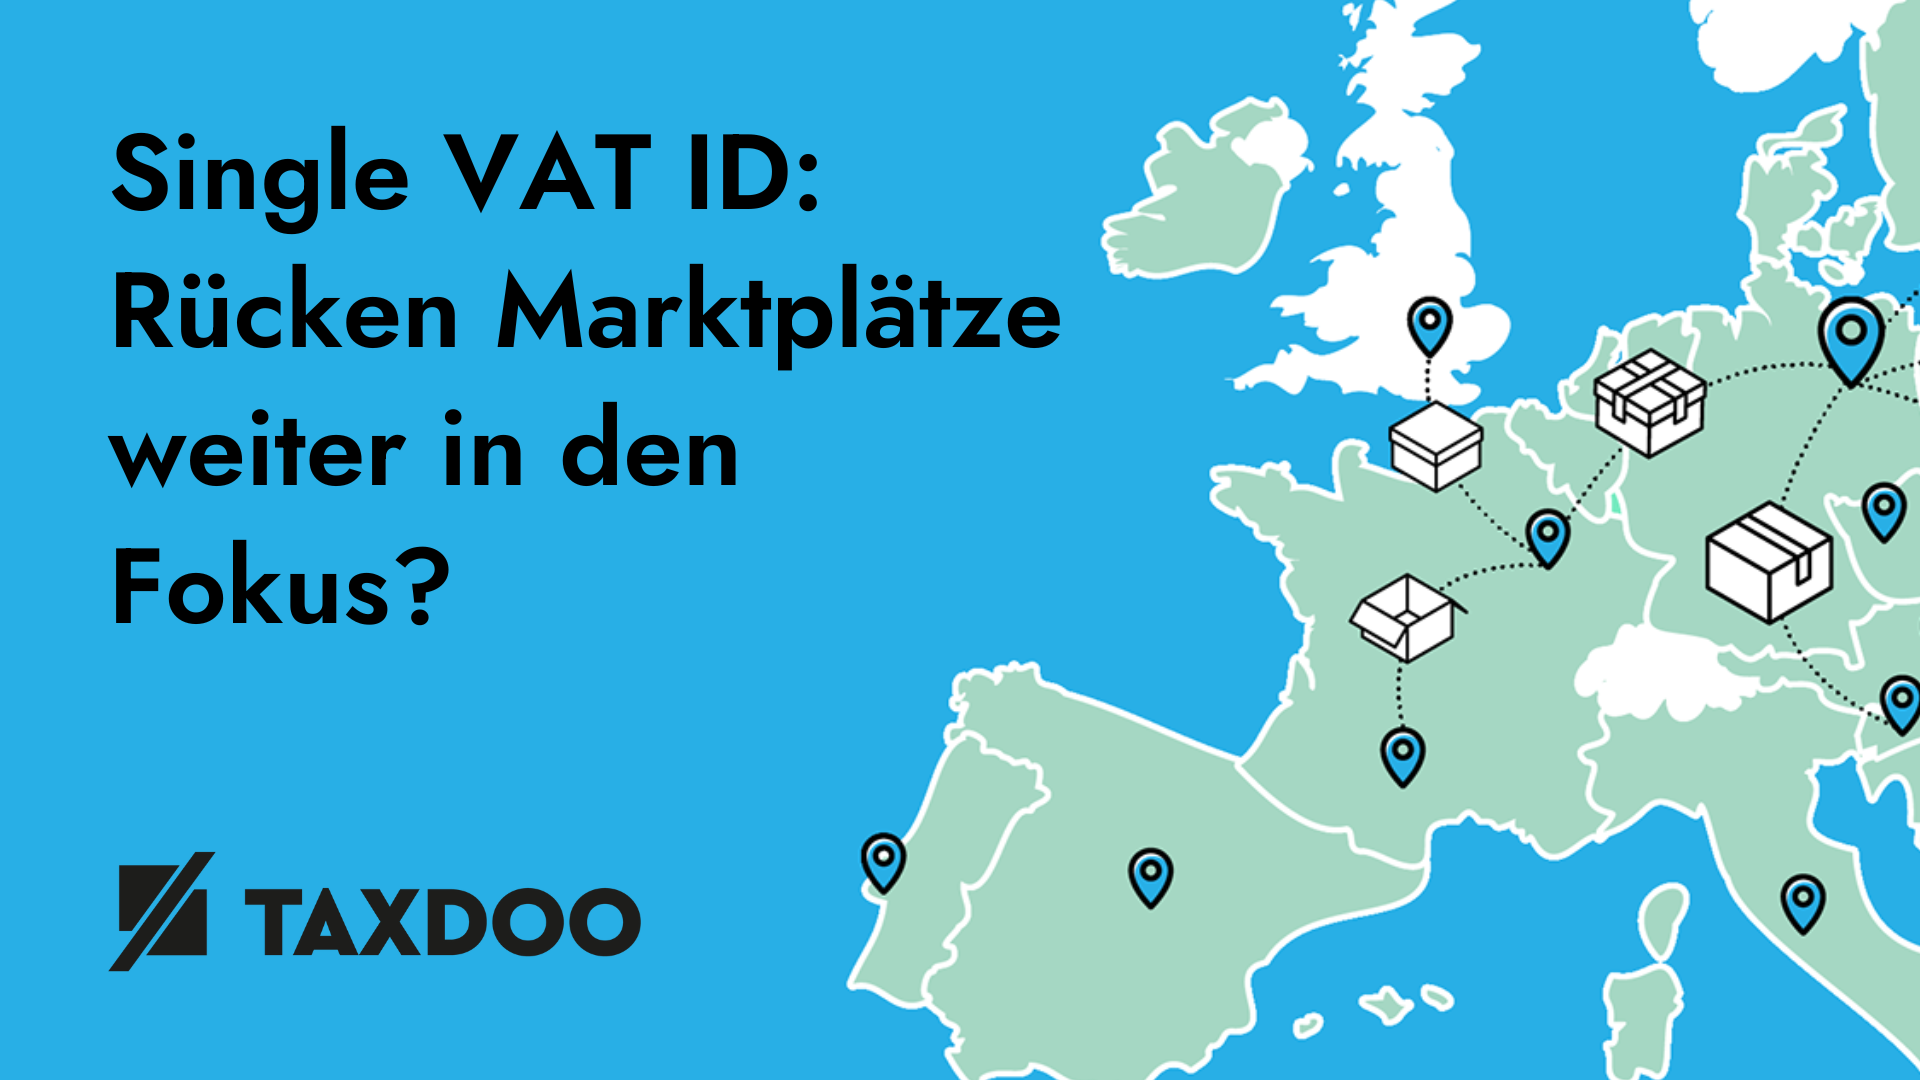 Single VAT ID: Rücken Marktplätze weiter in den Fokus?